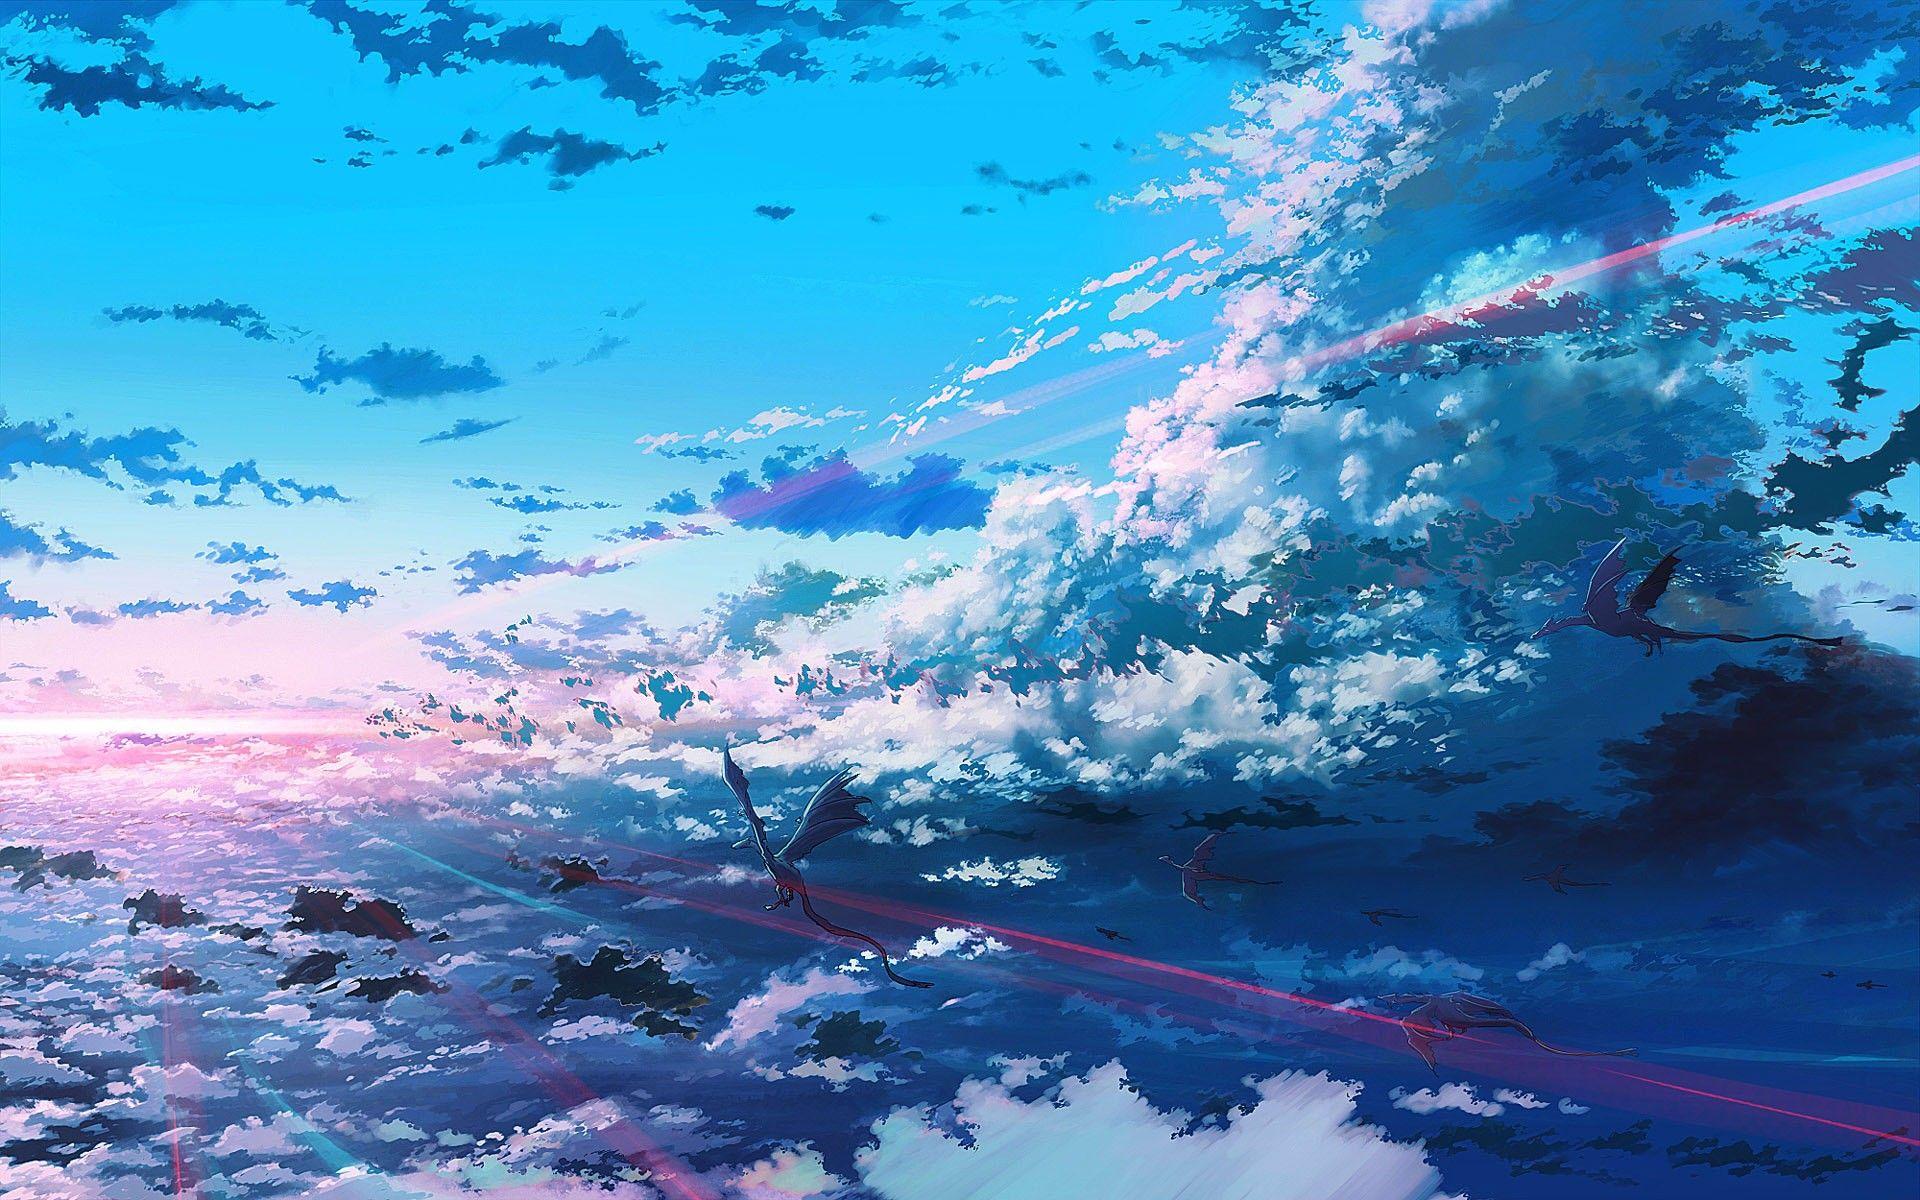 Hình nền anime đẹp với độ phân giải chuẩn HD là một trong những lựa chọn tuyệt vời để tô điểm cho màn hình nền của bạn. Với nhiều chủ đề và phong cách tuyệt đẹp, chúng tôi sẽ đưa bạn đến với thế giới của nghệ thuật anime cực kỳ ấn tượng và tuyệt đẹp.